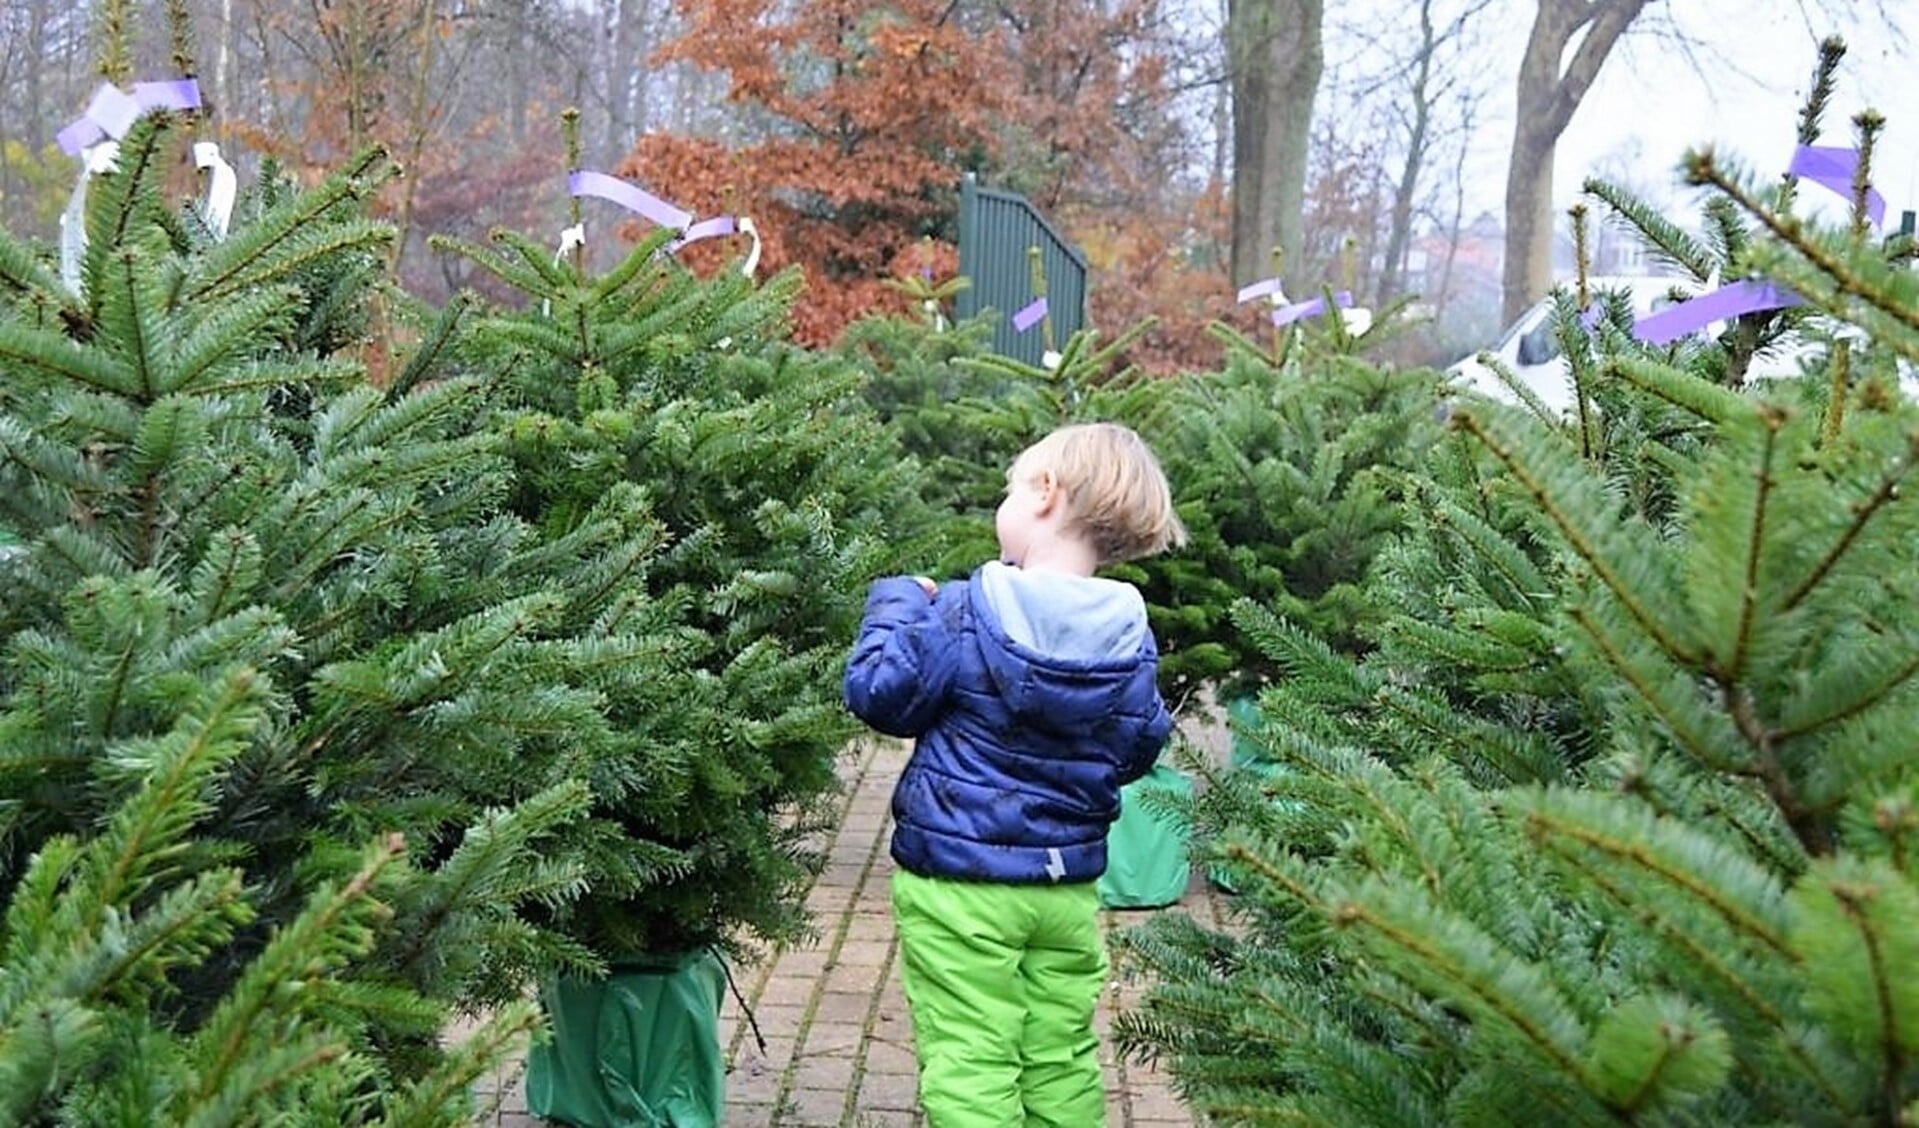 Je kunt weer kerstbomen kopen op Buitengoed Dorrepaal, maar je moet wel in de auto blijven, behalve om de kersboom in te laden.